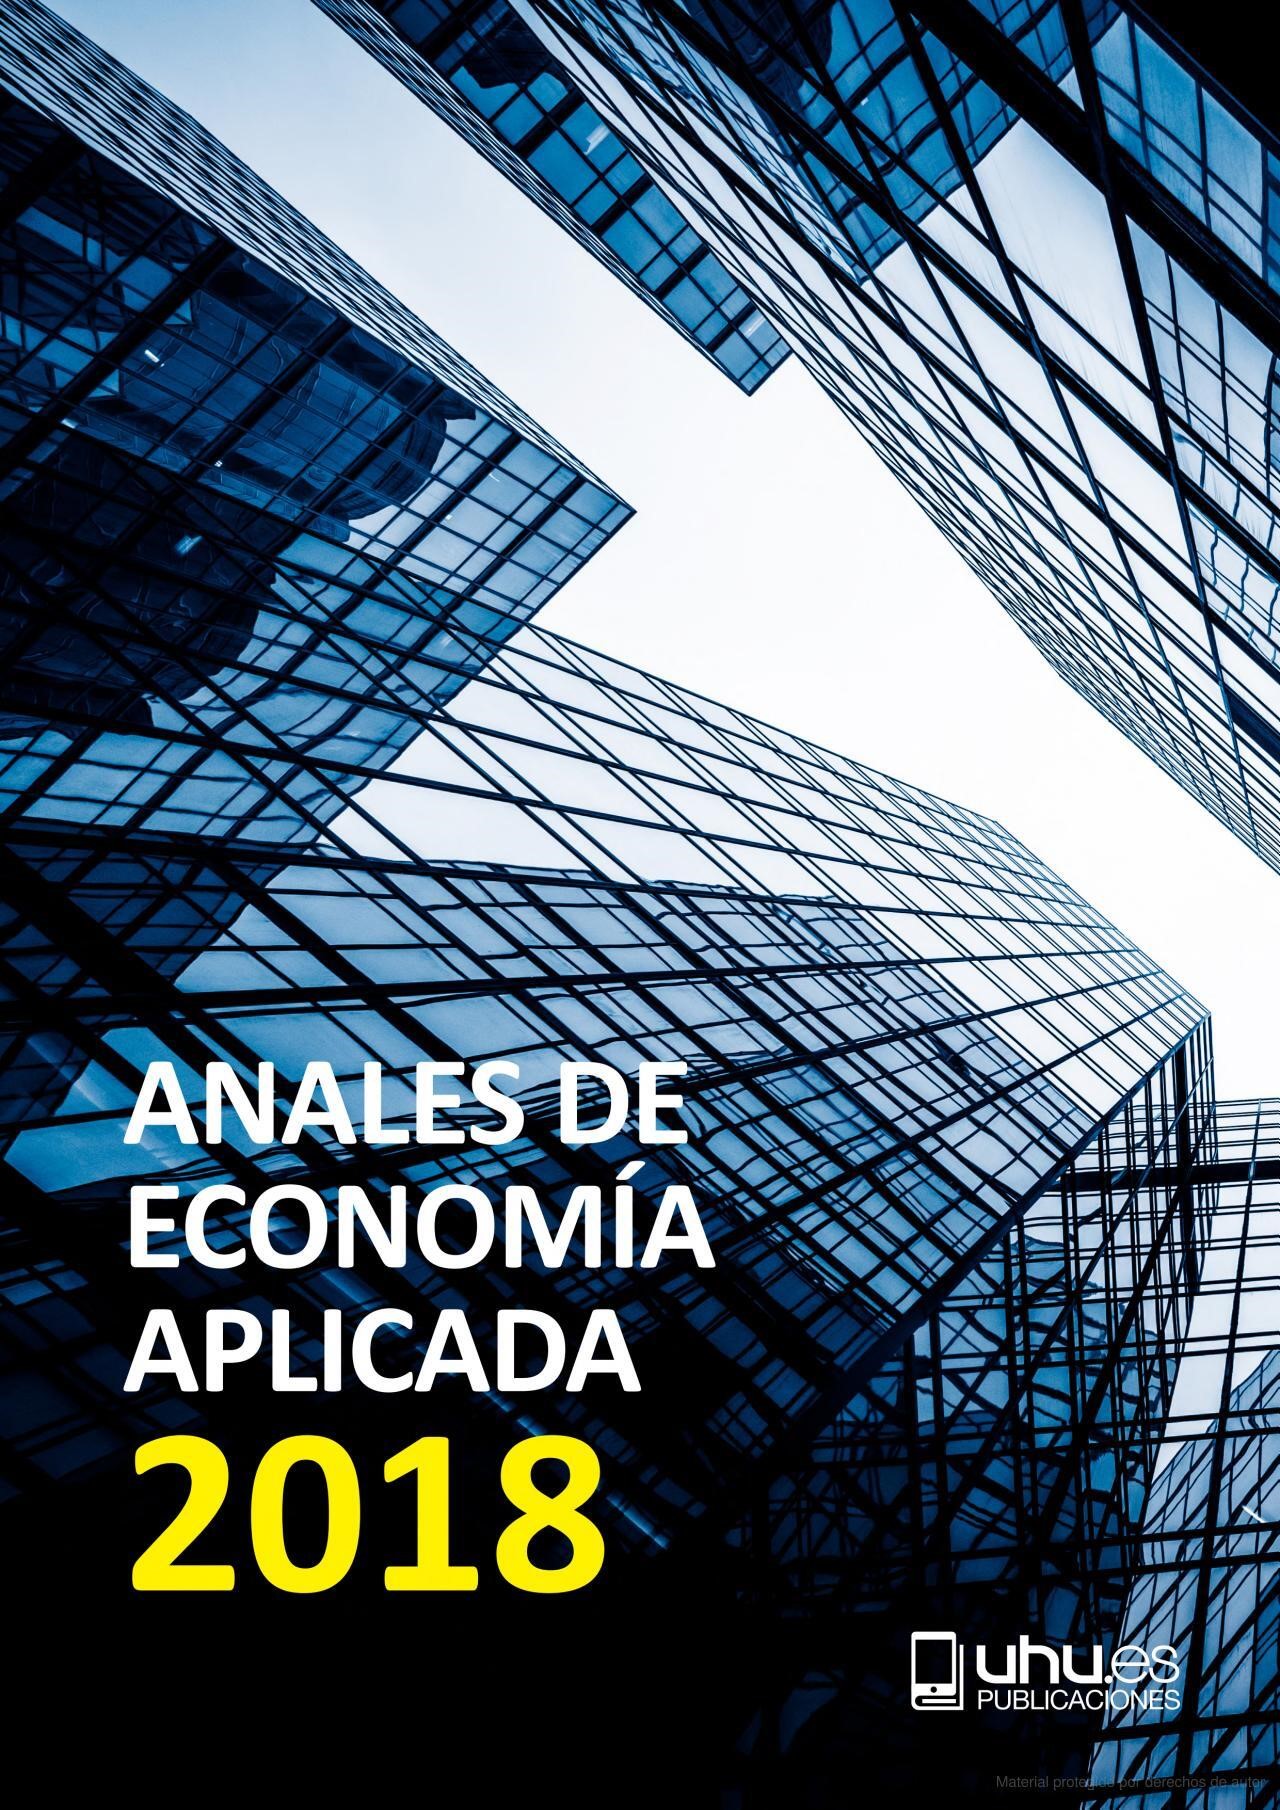 Imagen de portada del libro Anales de Economía Aplicada 2018